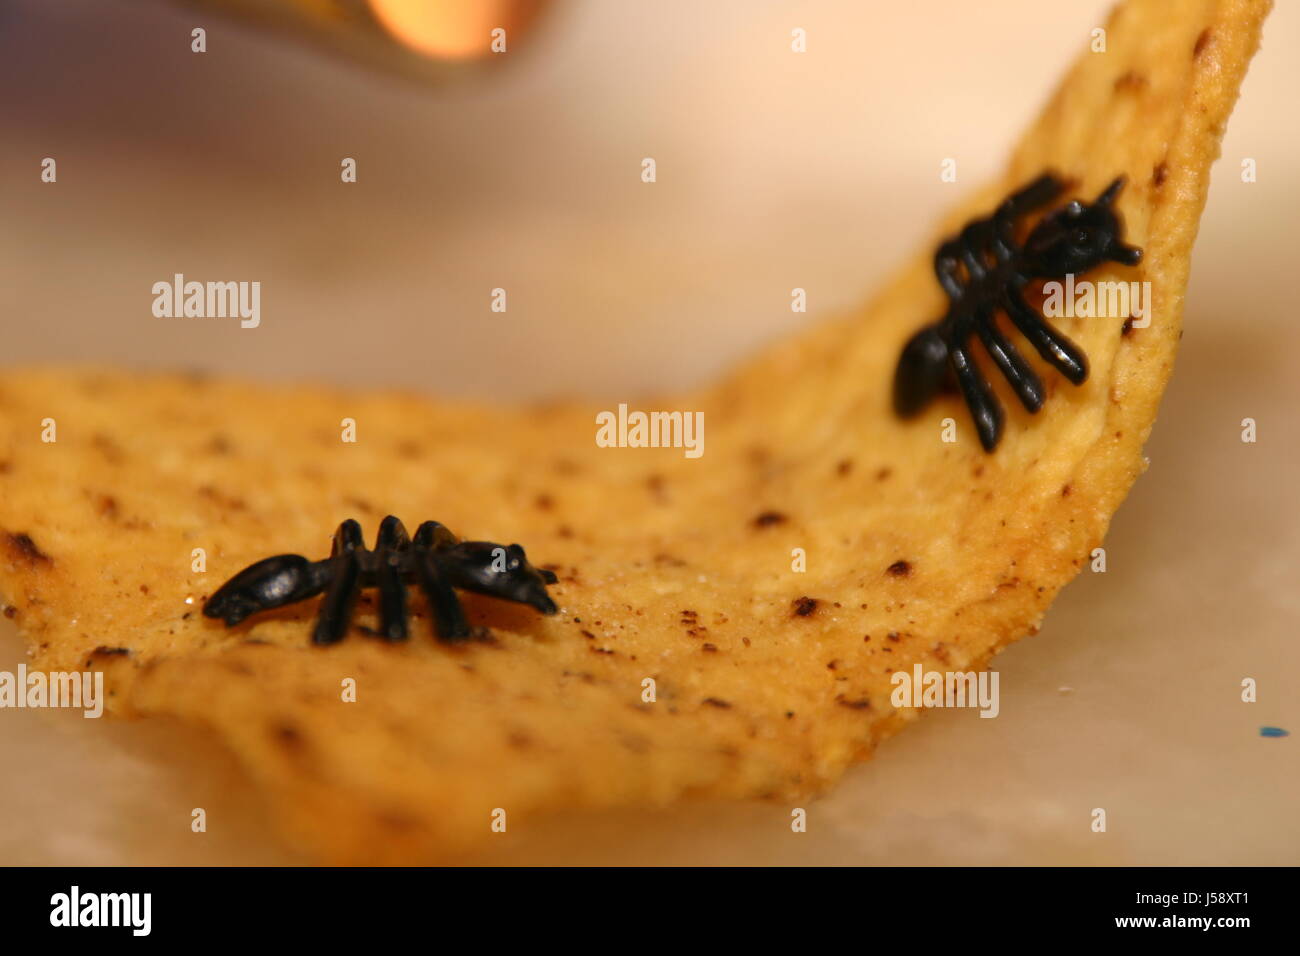 Witz Termiten gefälschte Studie Fete Inspiration plötzliche Eingebung dachte Essen Stockfoto